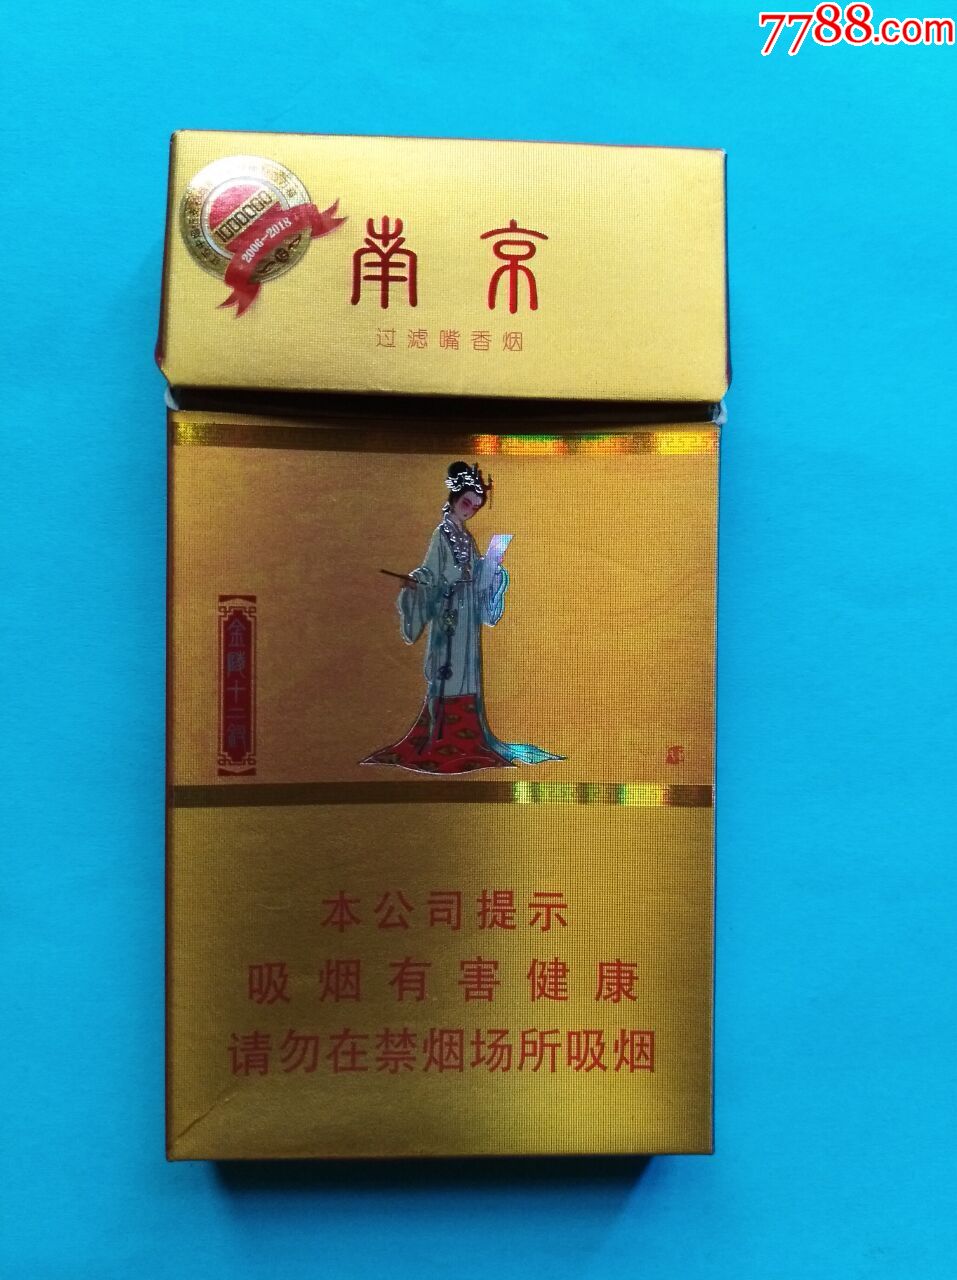 南京12钗烟图片